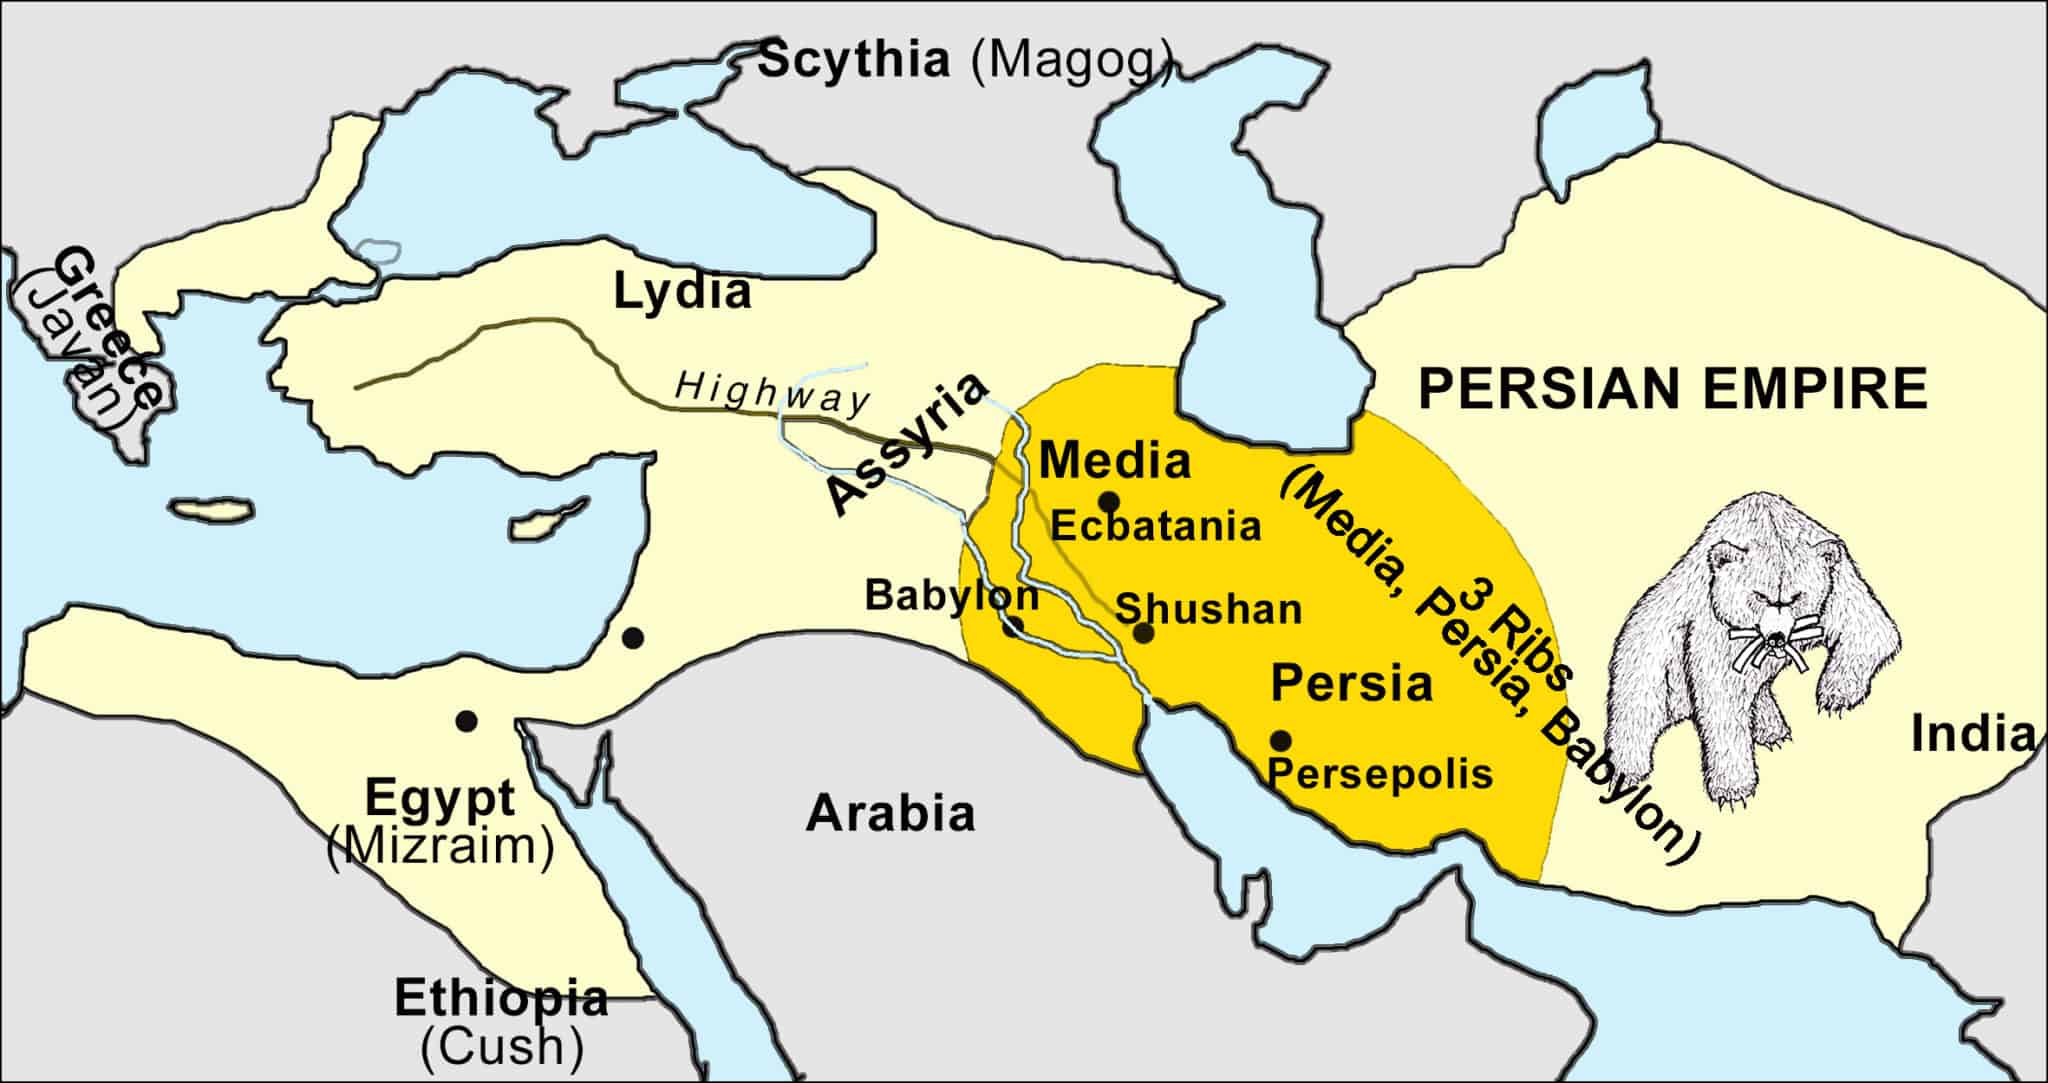 THE PERSIAN EMPIRE